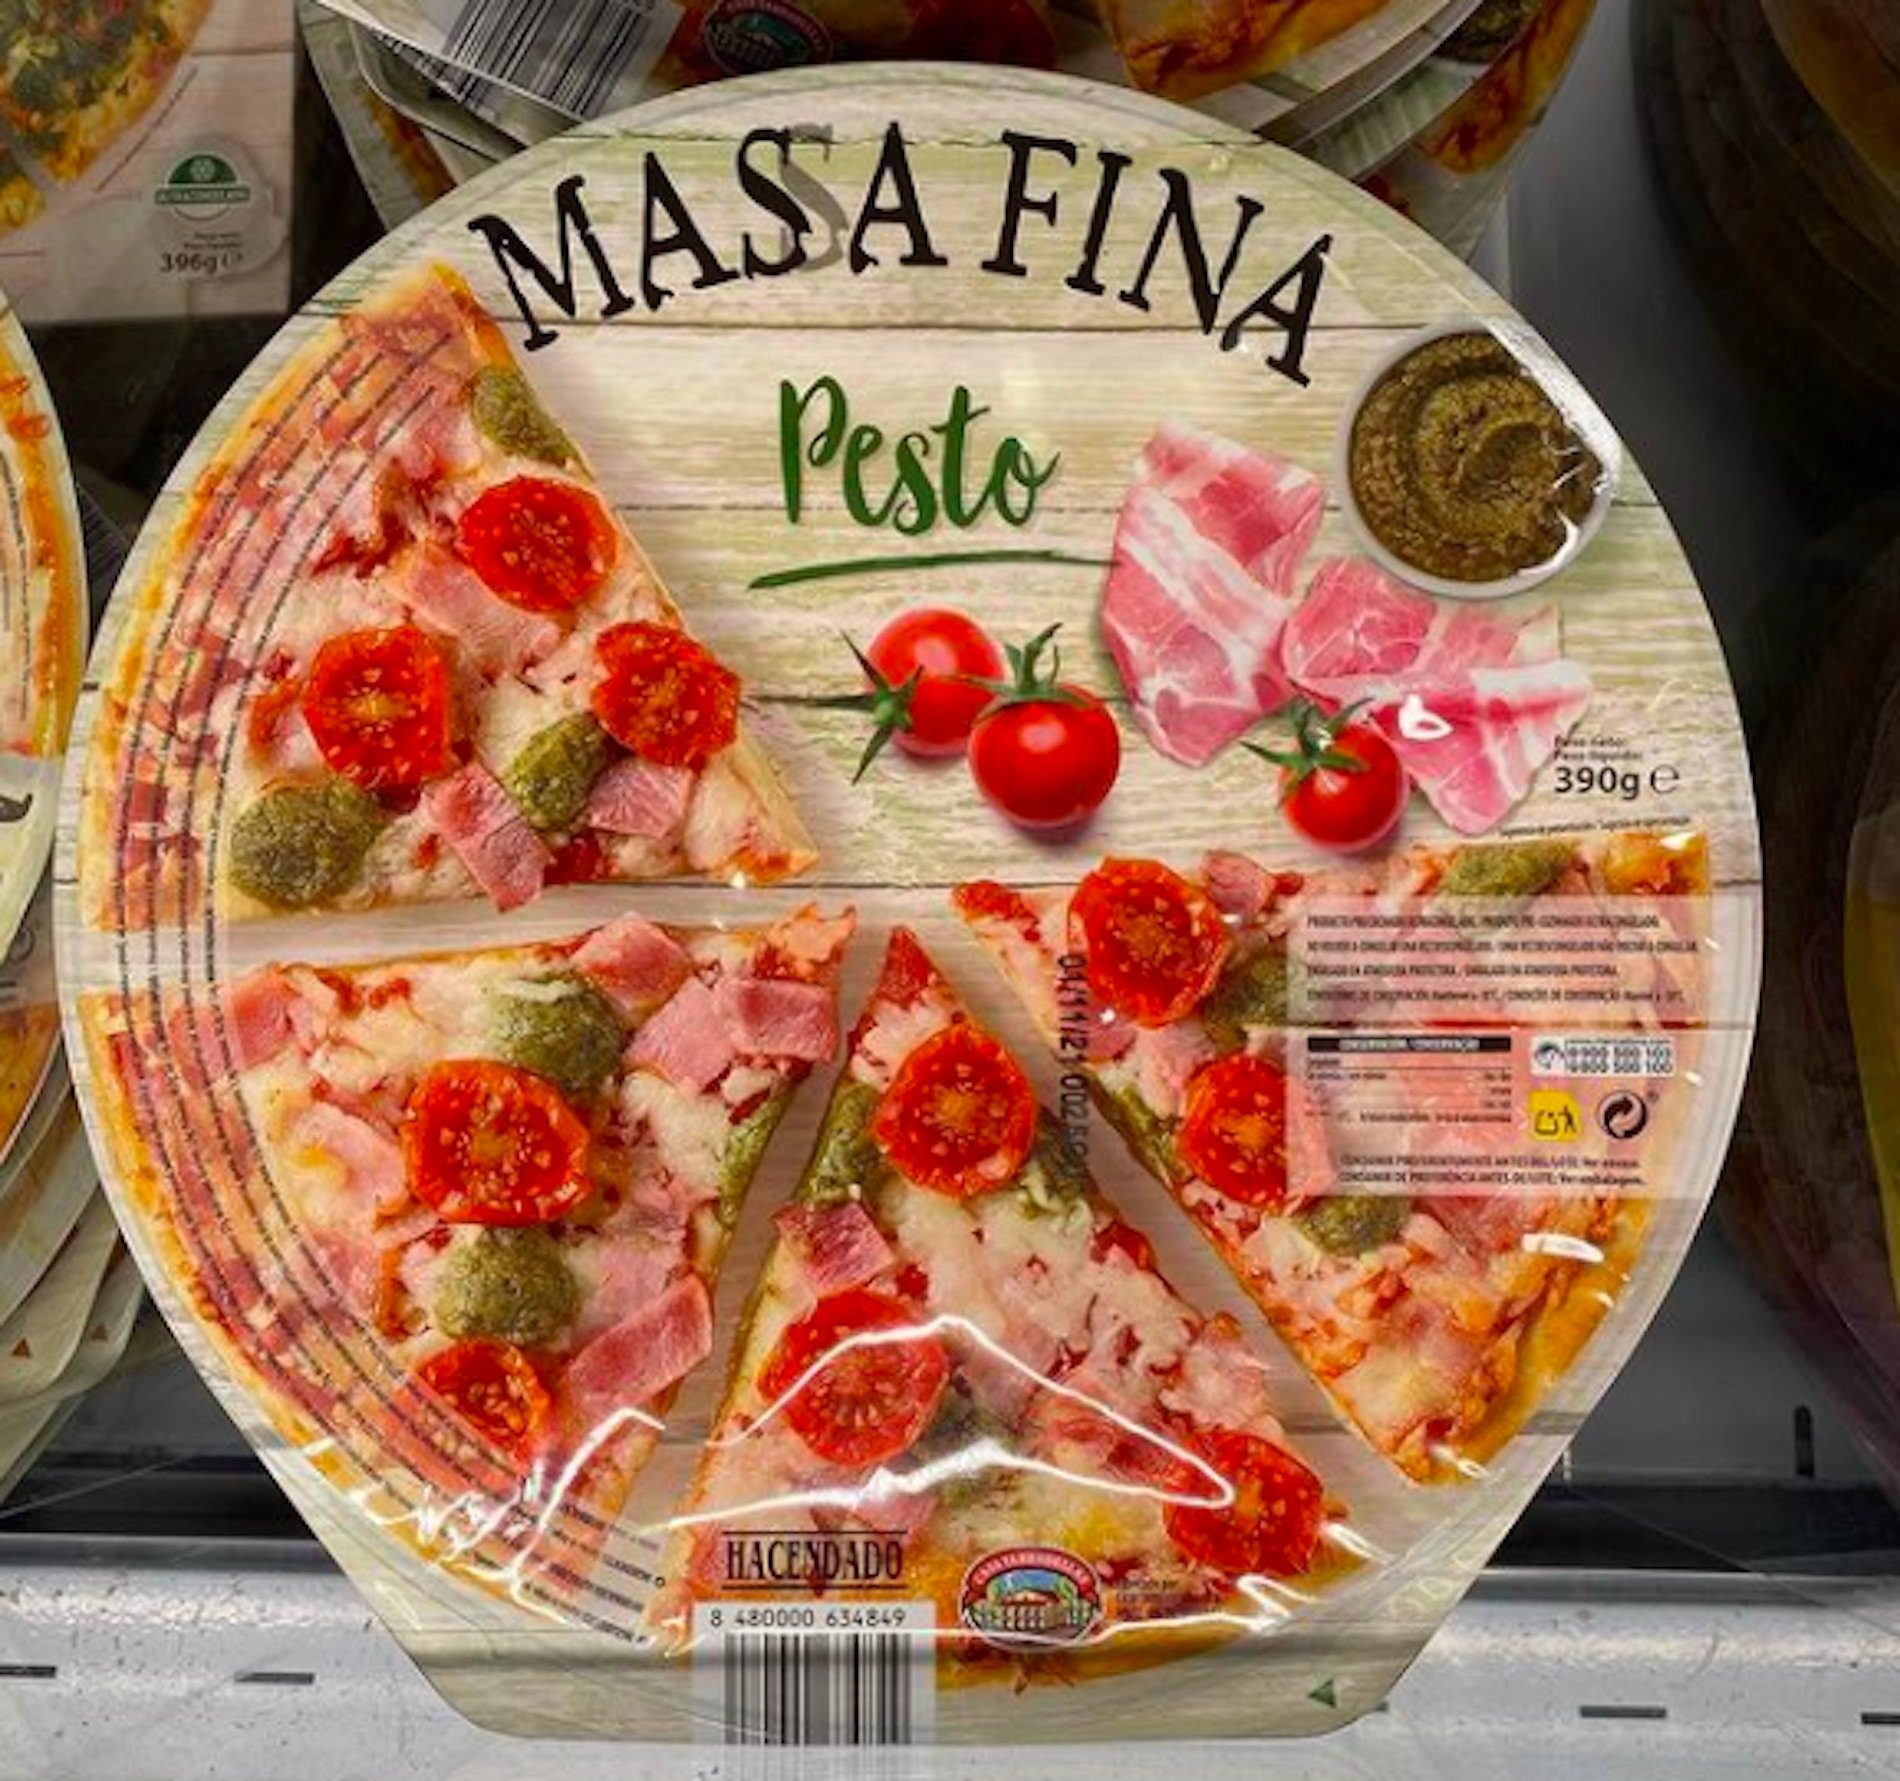 Pizza en el pesto Hacendado / Instagram mercadona.novedades